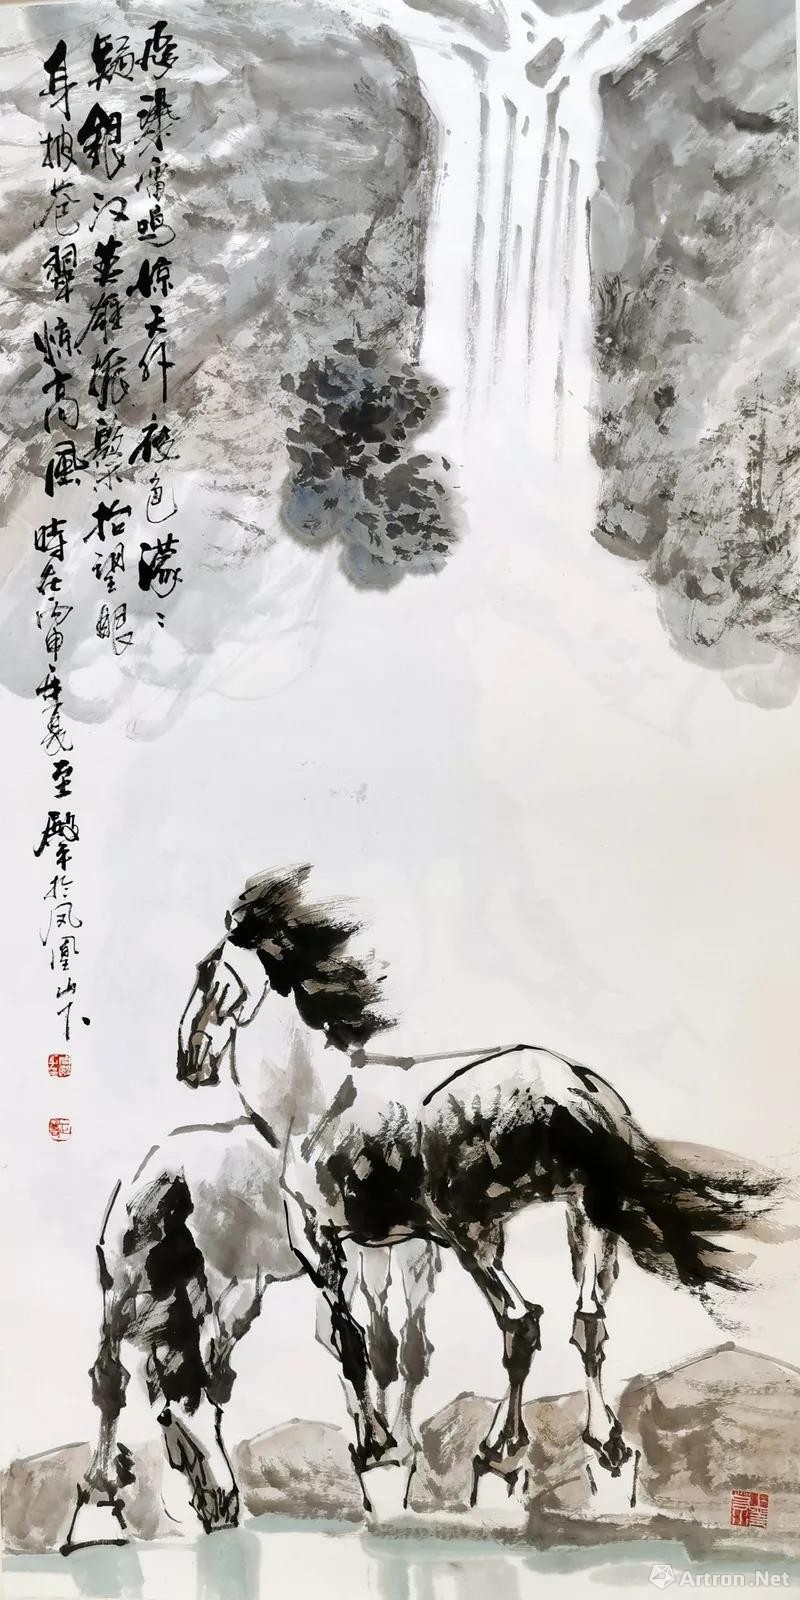 「盛世丹青」中国当代画马名家周殿平精品画展